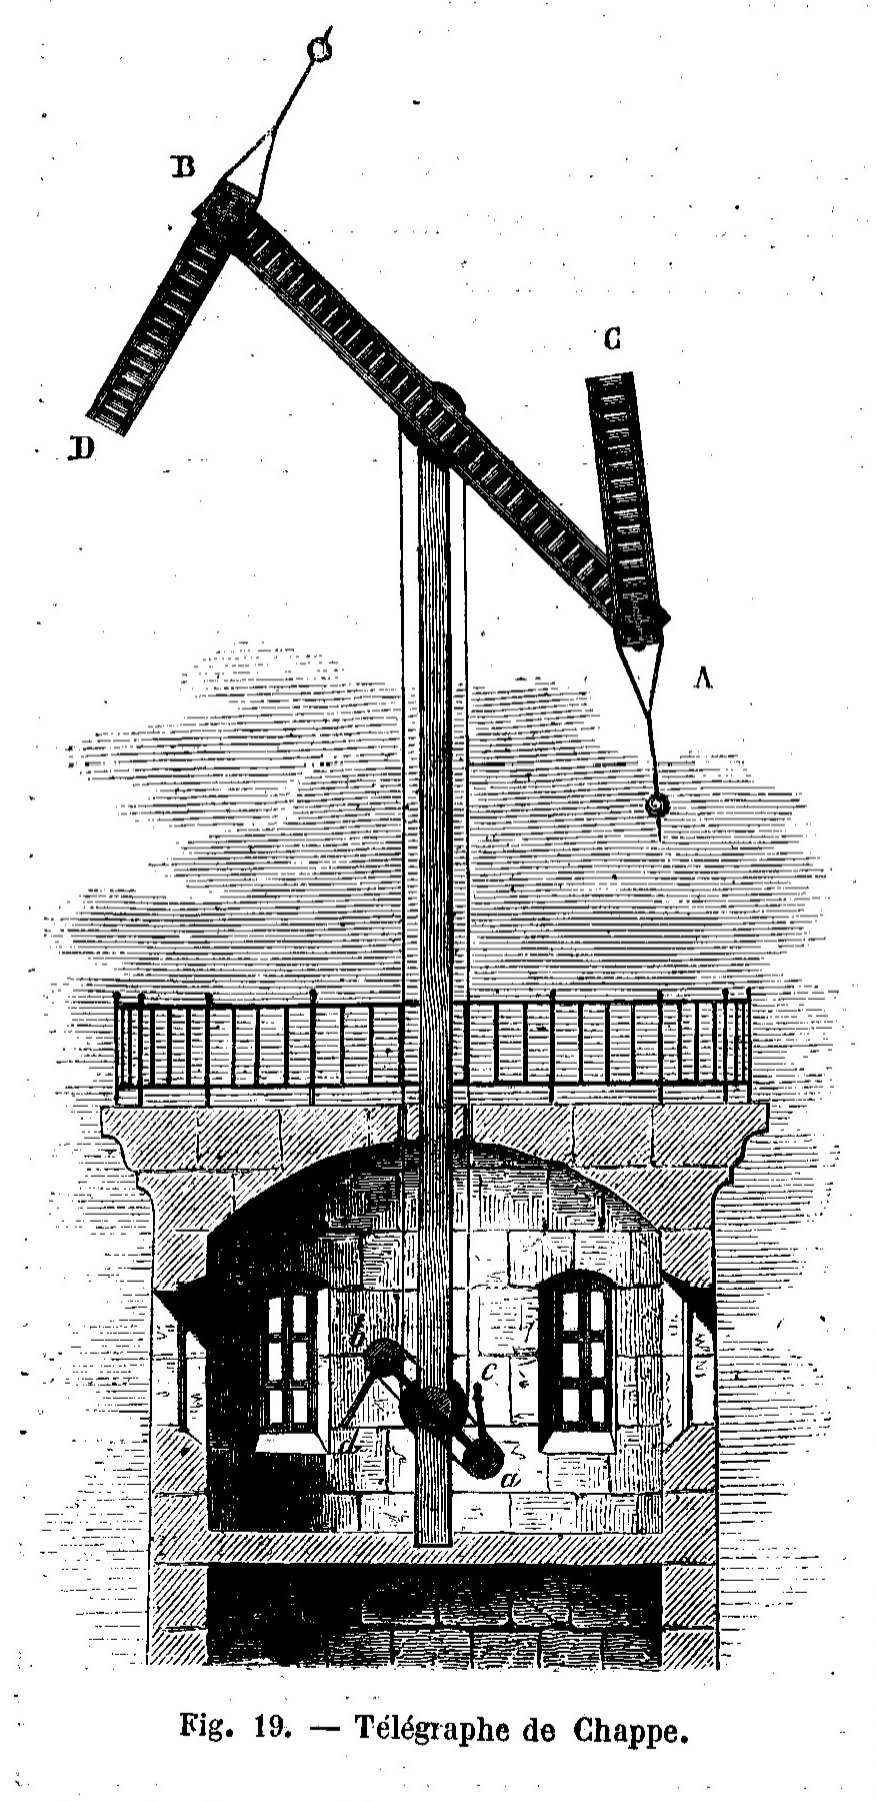 Fig. 1. Télégraphe Chappe